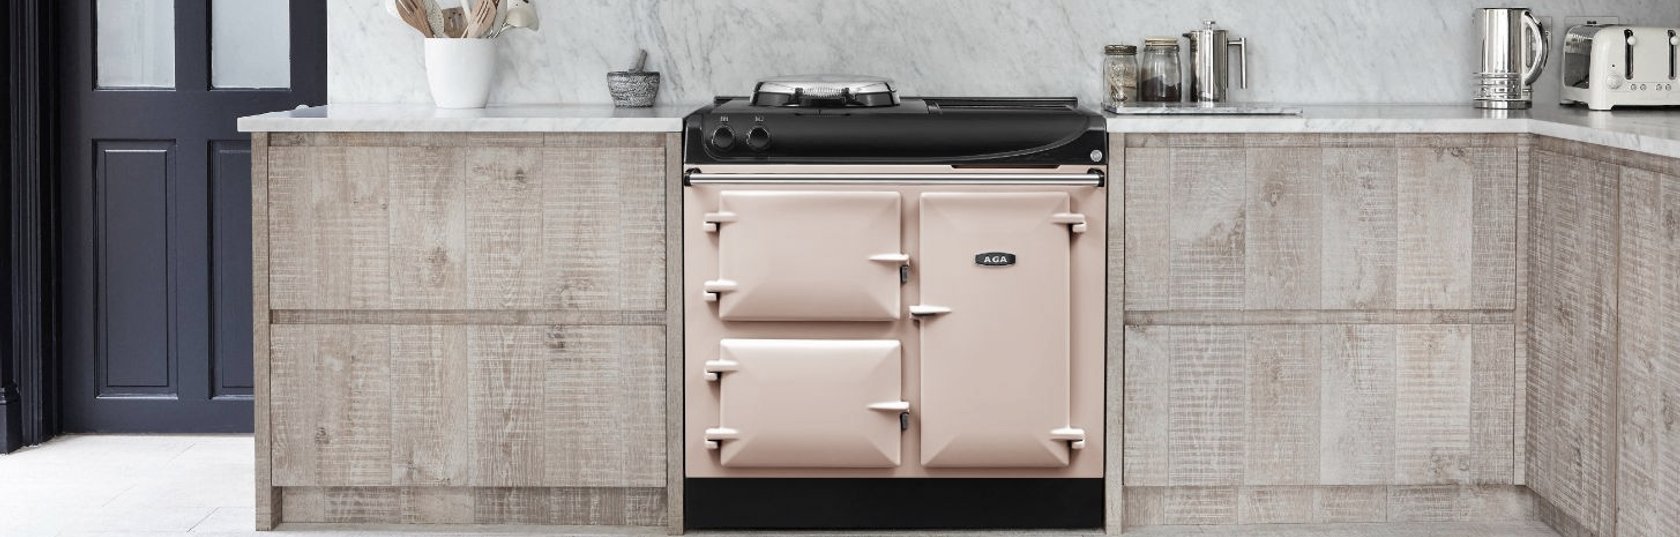 Not just an oven: meet the AGA cooker